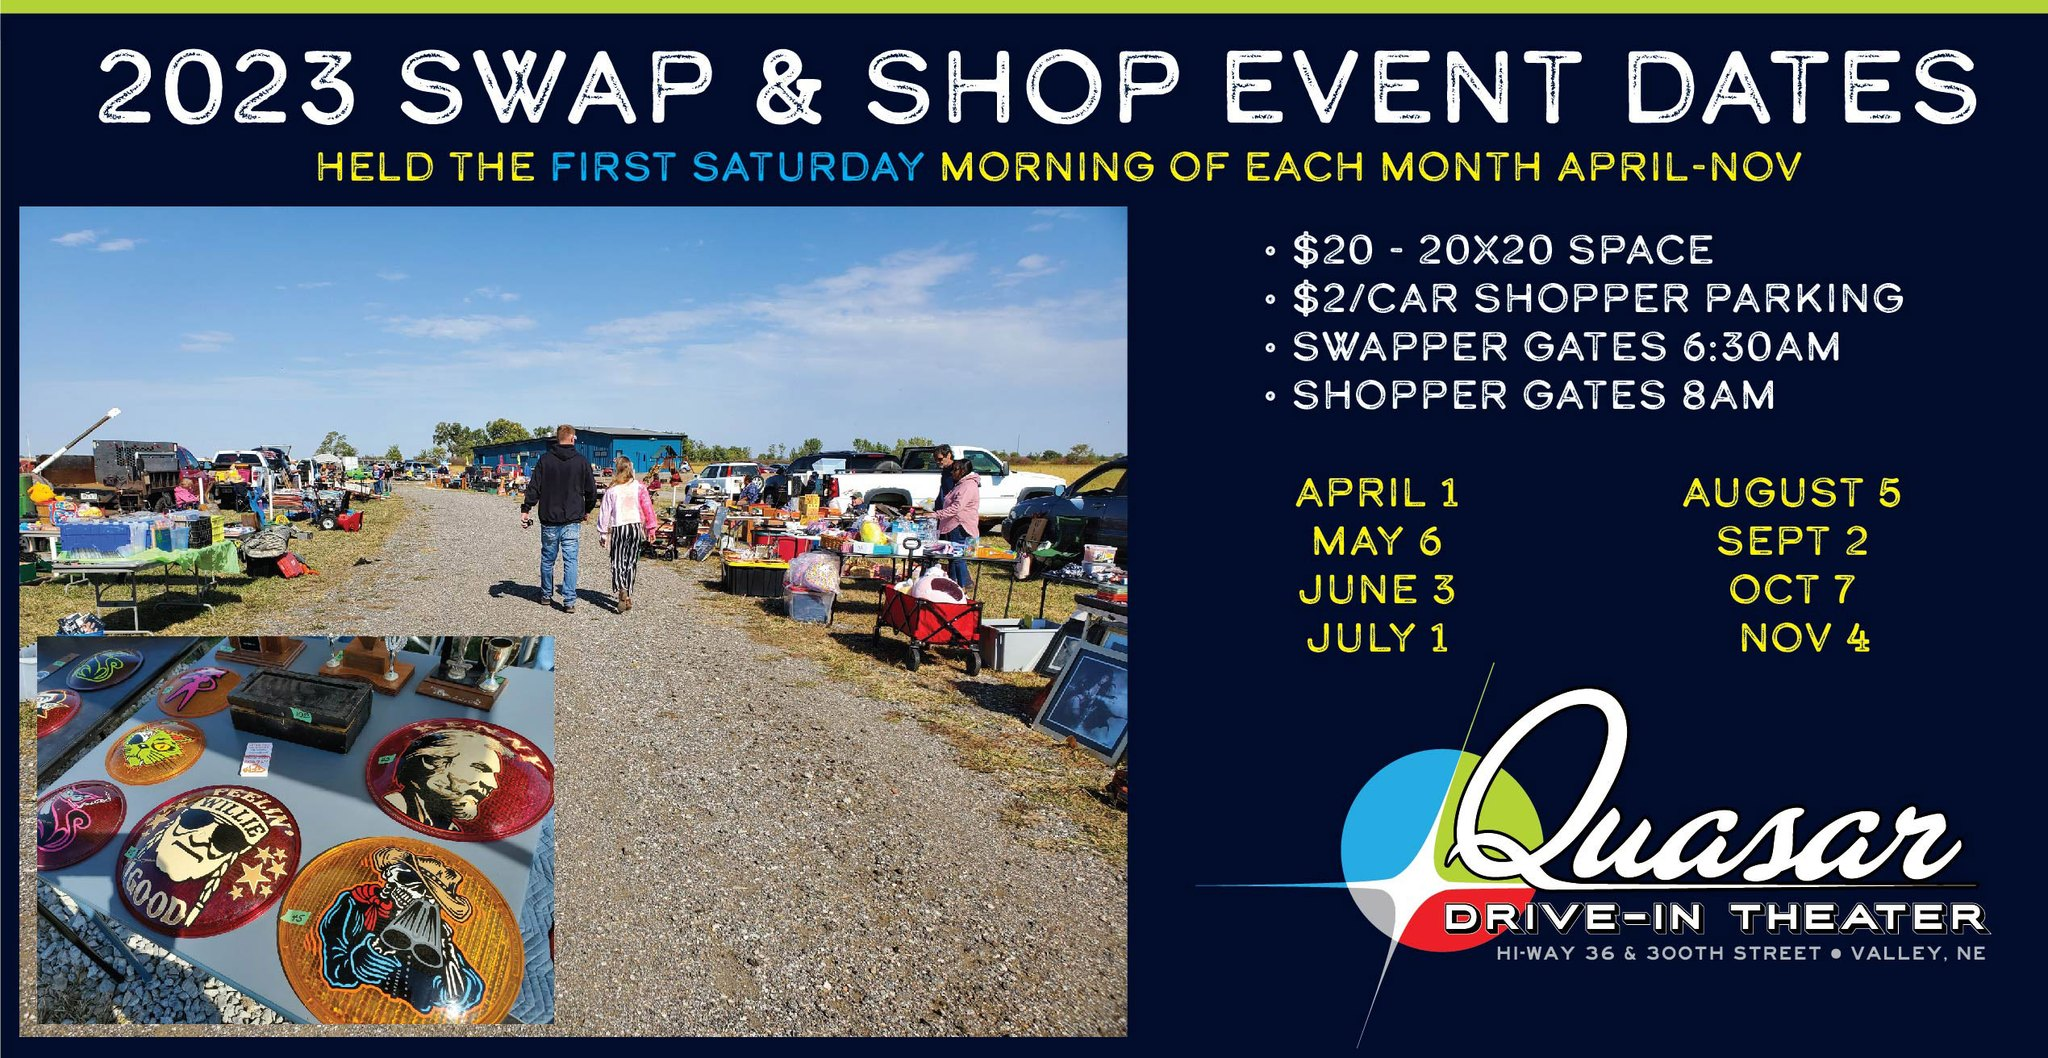 2023 Swap & Shop Event Dates